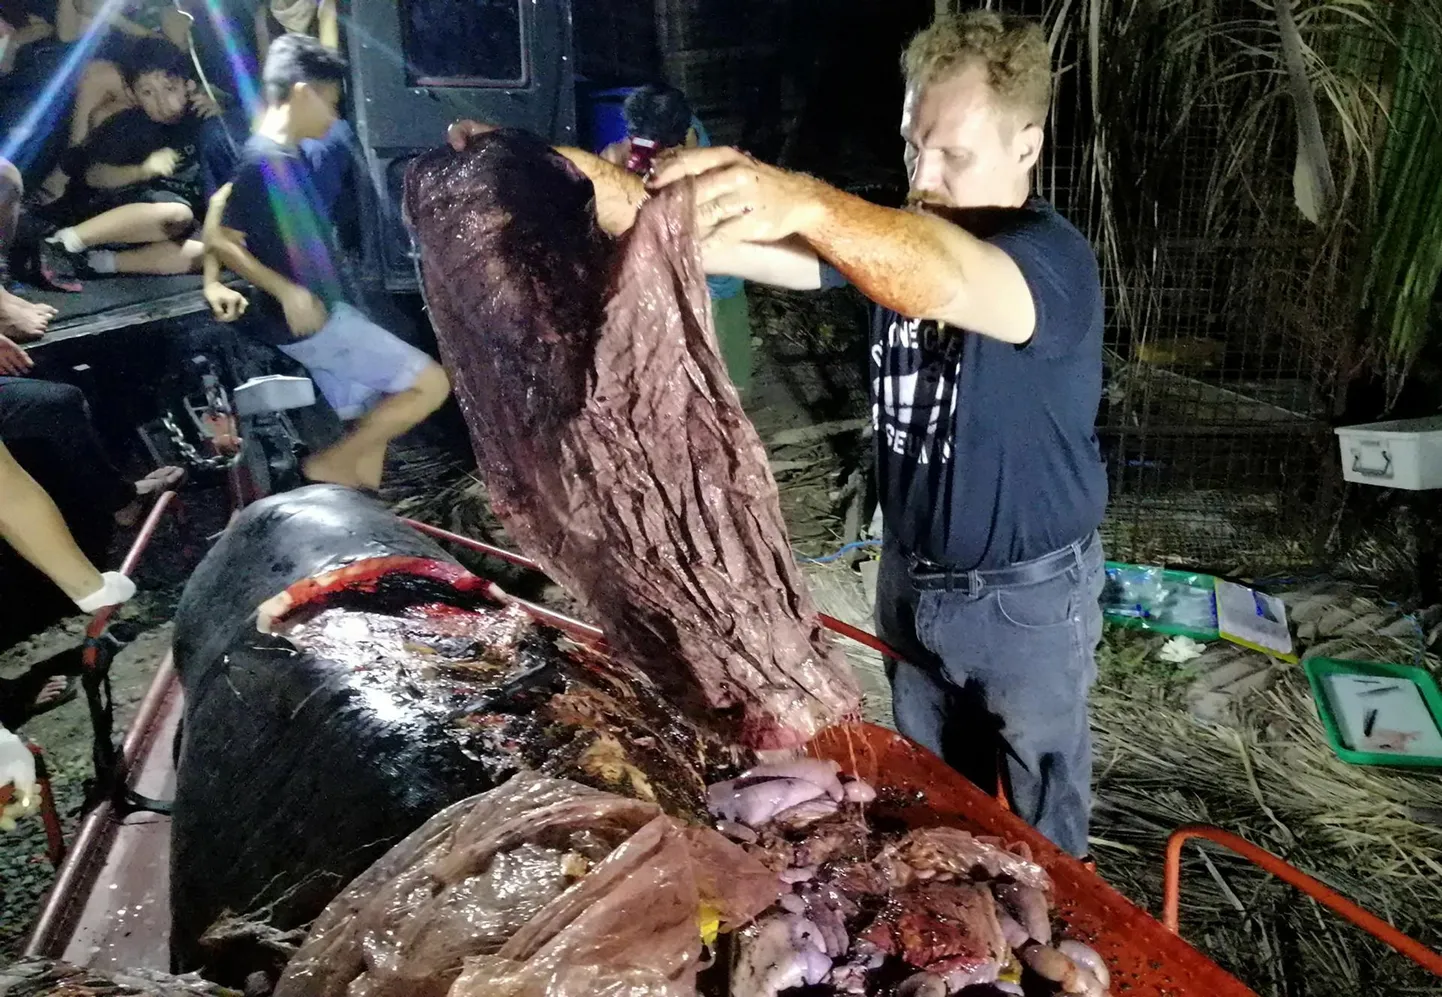 D’Bone Collector Museumi direktor Darrell Blatchley näitab plastijäätmeid, mis leiti Cuvier' nokkvaala maost Filipiinide lõunaosas Mindanao saare vetest. Nälginud vaal, kelle kõhust leiti 40 kilogrammi plastprügi, suri peagi pärast kaldale uhtumist.